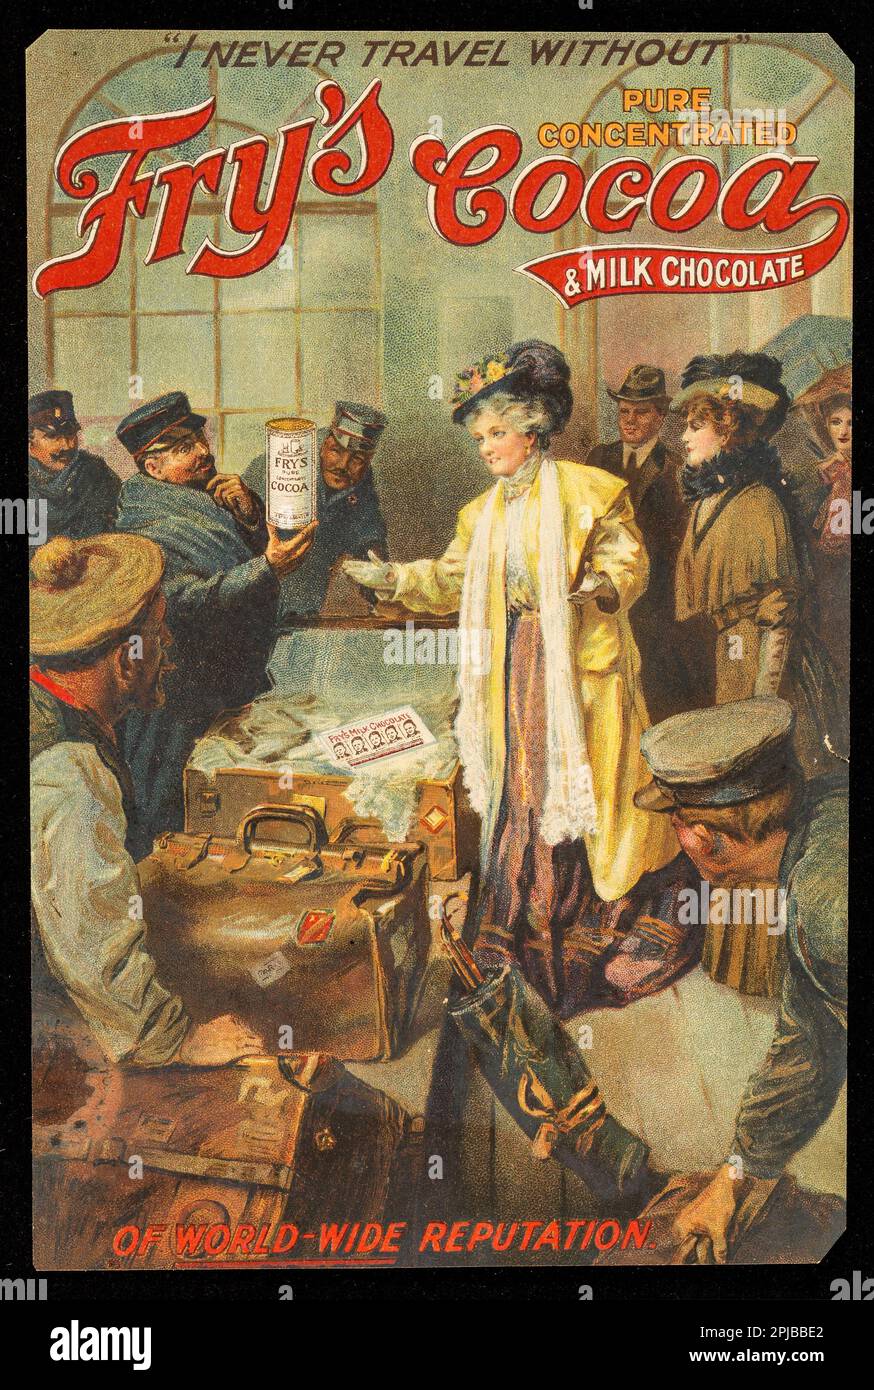 « Je ne voyage jamais sans » le cacao concentré et le chocolat au lait de Fry, de renommée mondiale J.S. Fry & Sons Ltd, publicité vintage de C1900 Banque D'Images